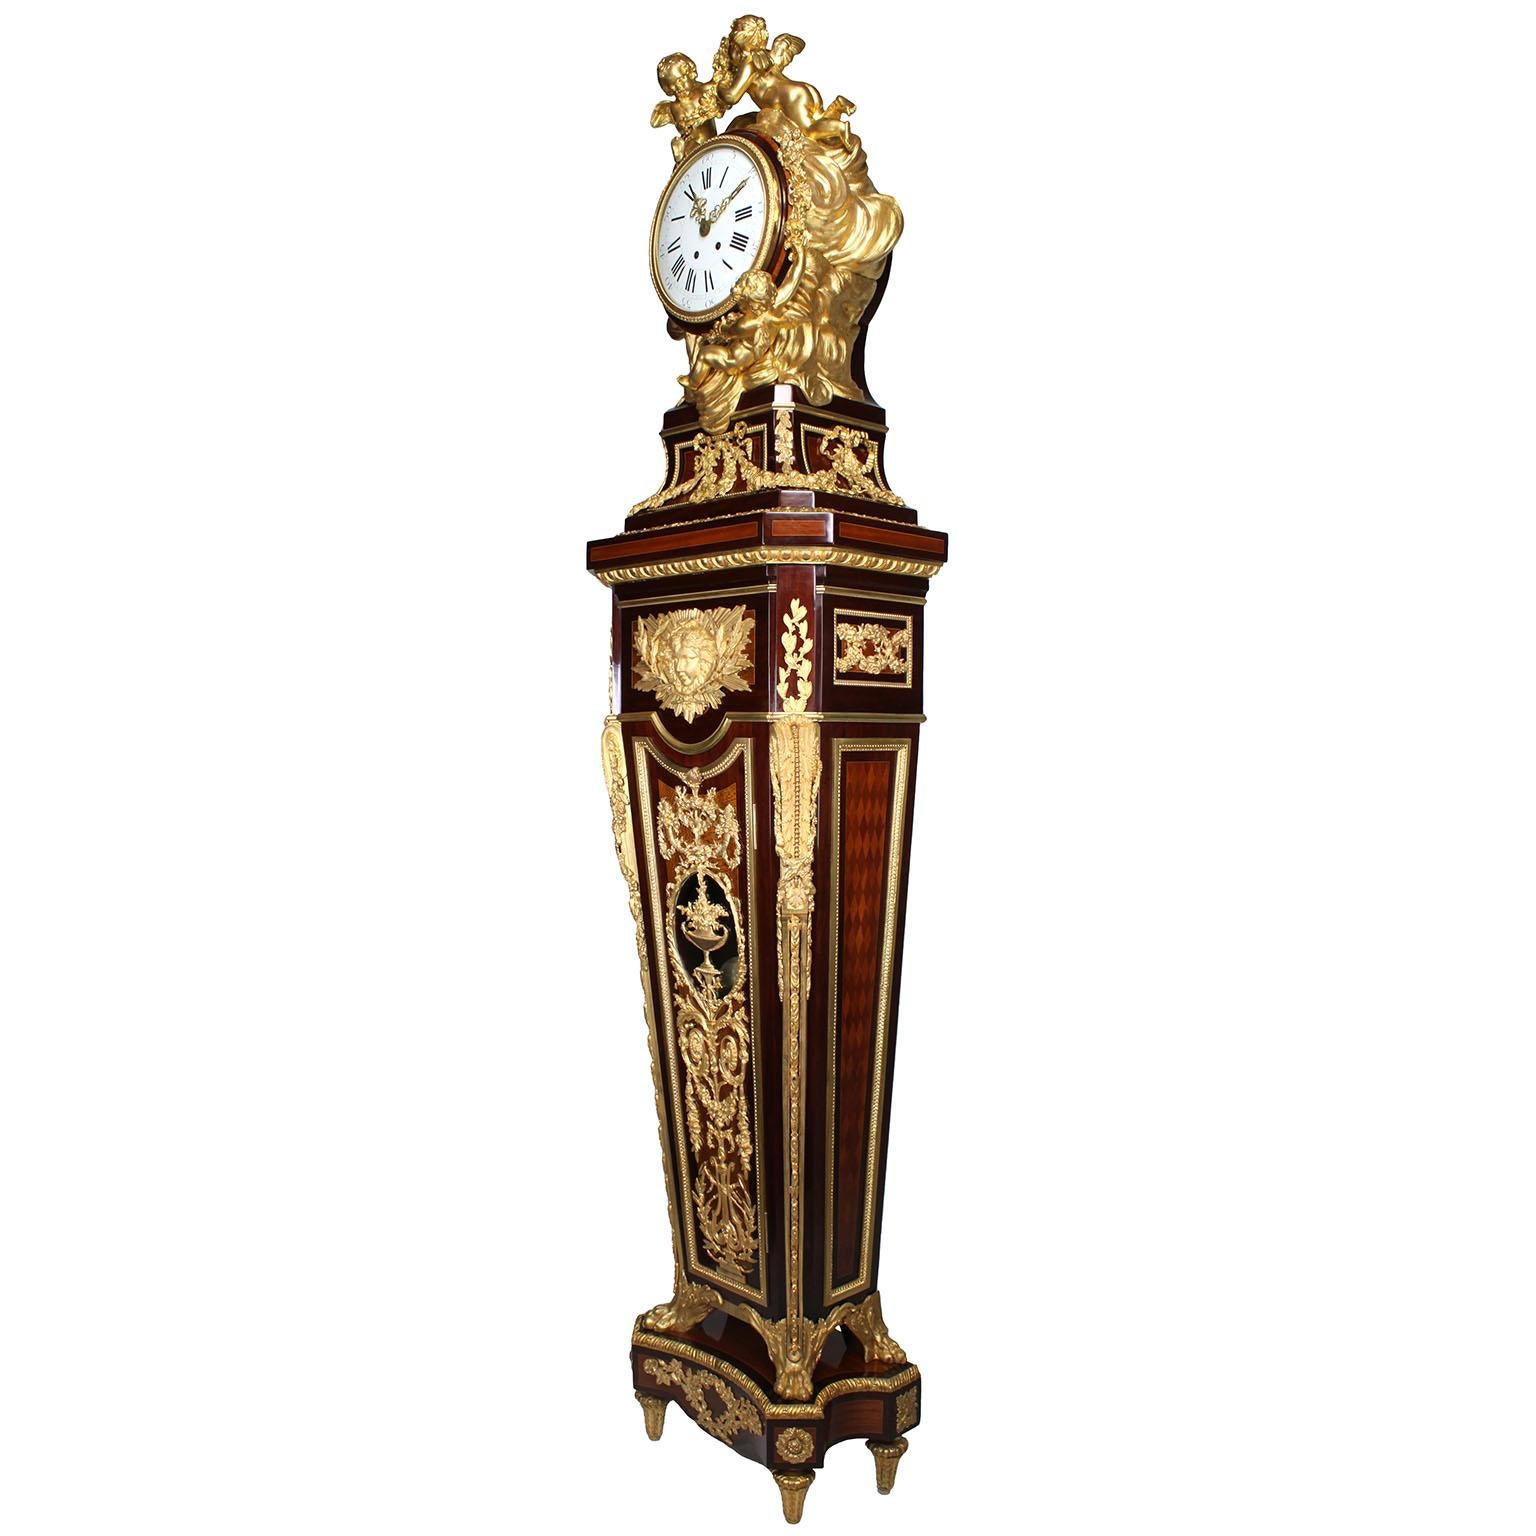 Très belle horloge française du XIXe siècle de style Louis XVI, montée sur un piédestal en amarante, tulipier, sycomore et parquet, et ornée de bronze doré. Pendule, d'après le modèle attribué à Jean-Henri HENRY, surmontée d'un boîtier en forme de